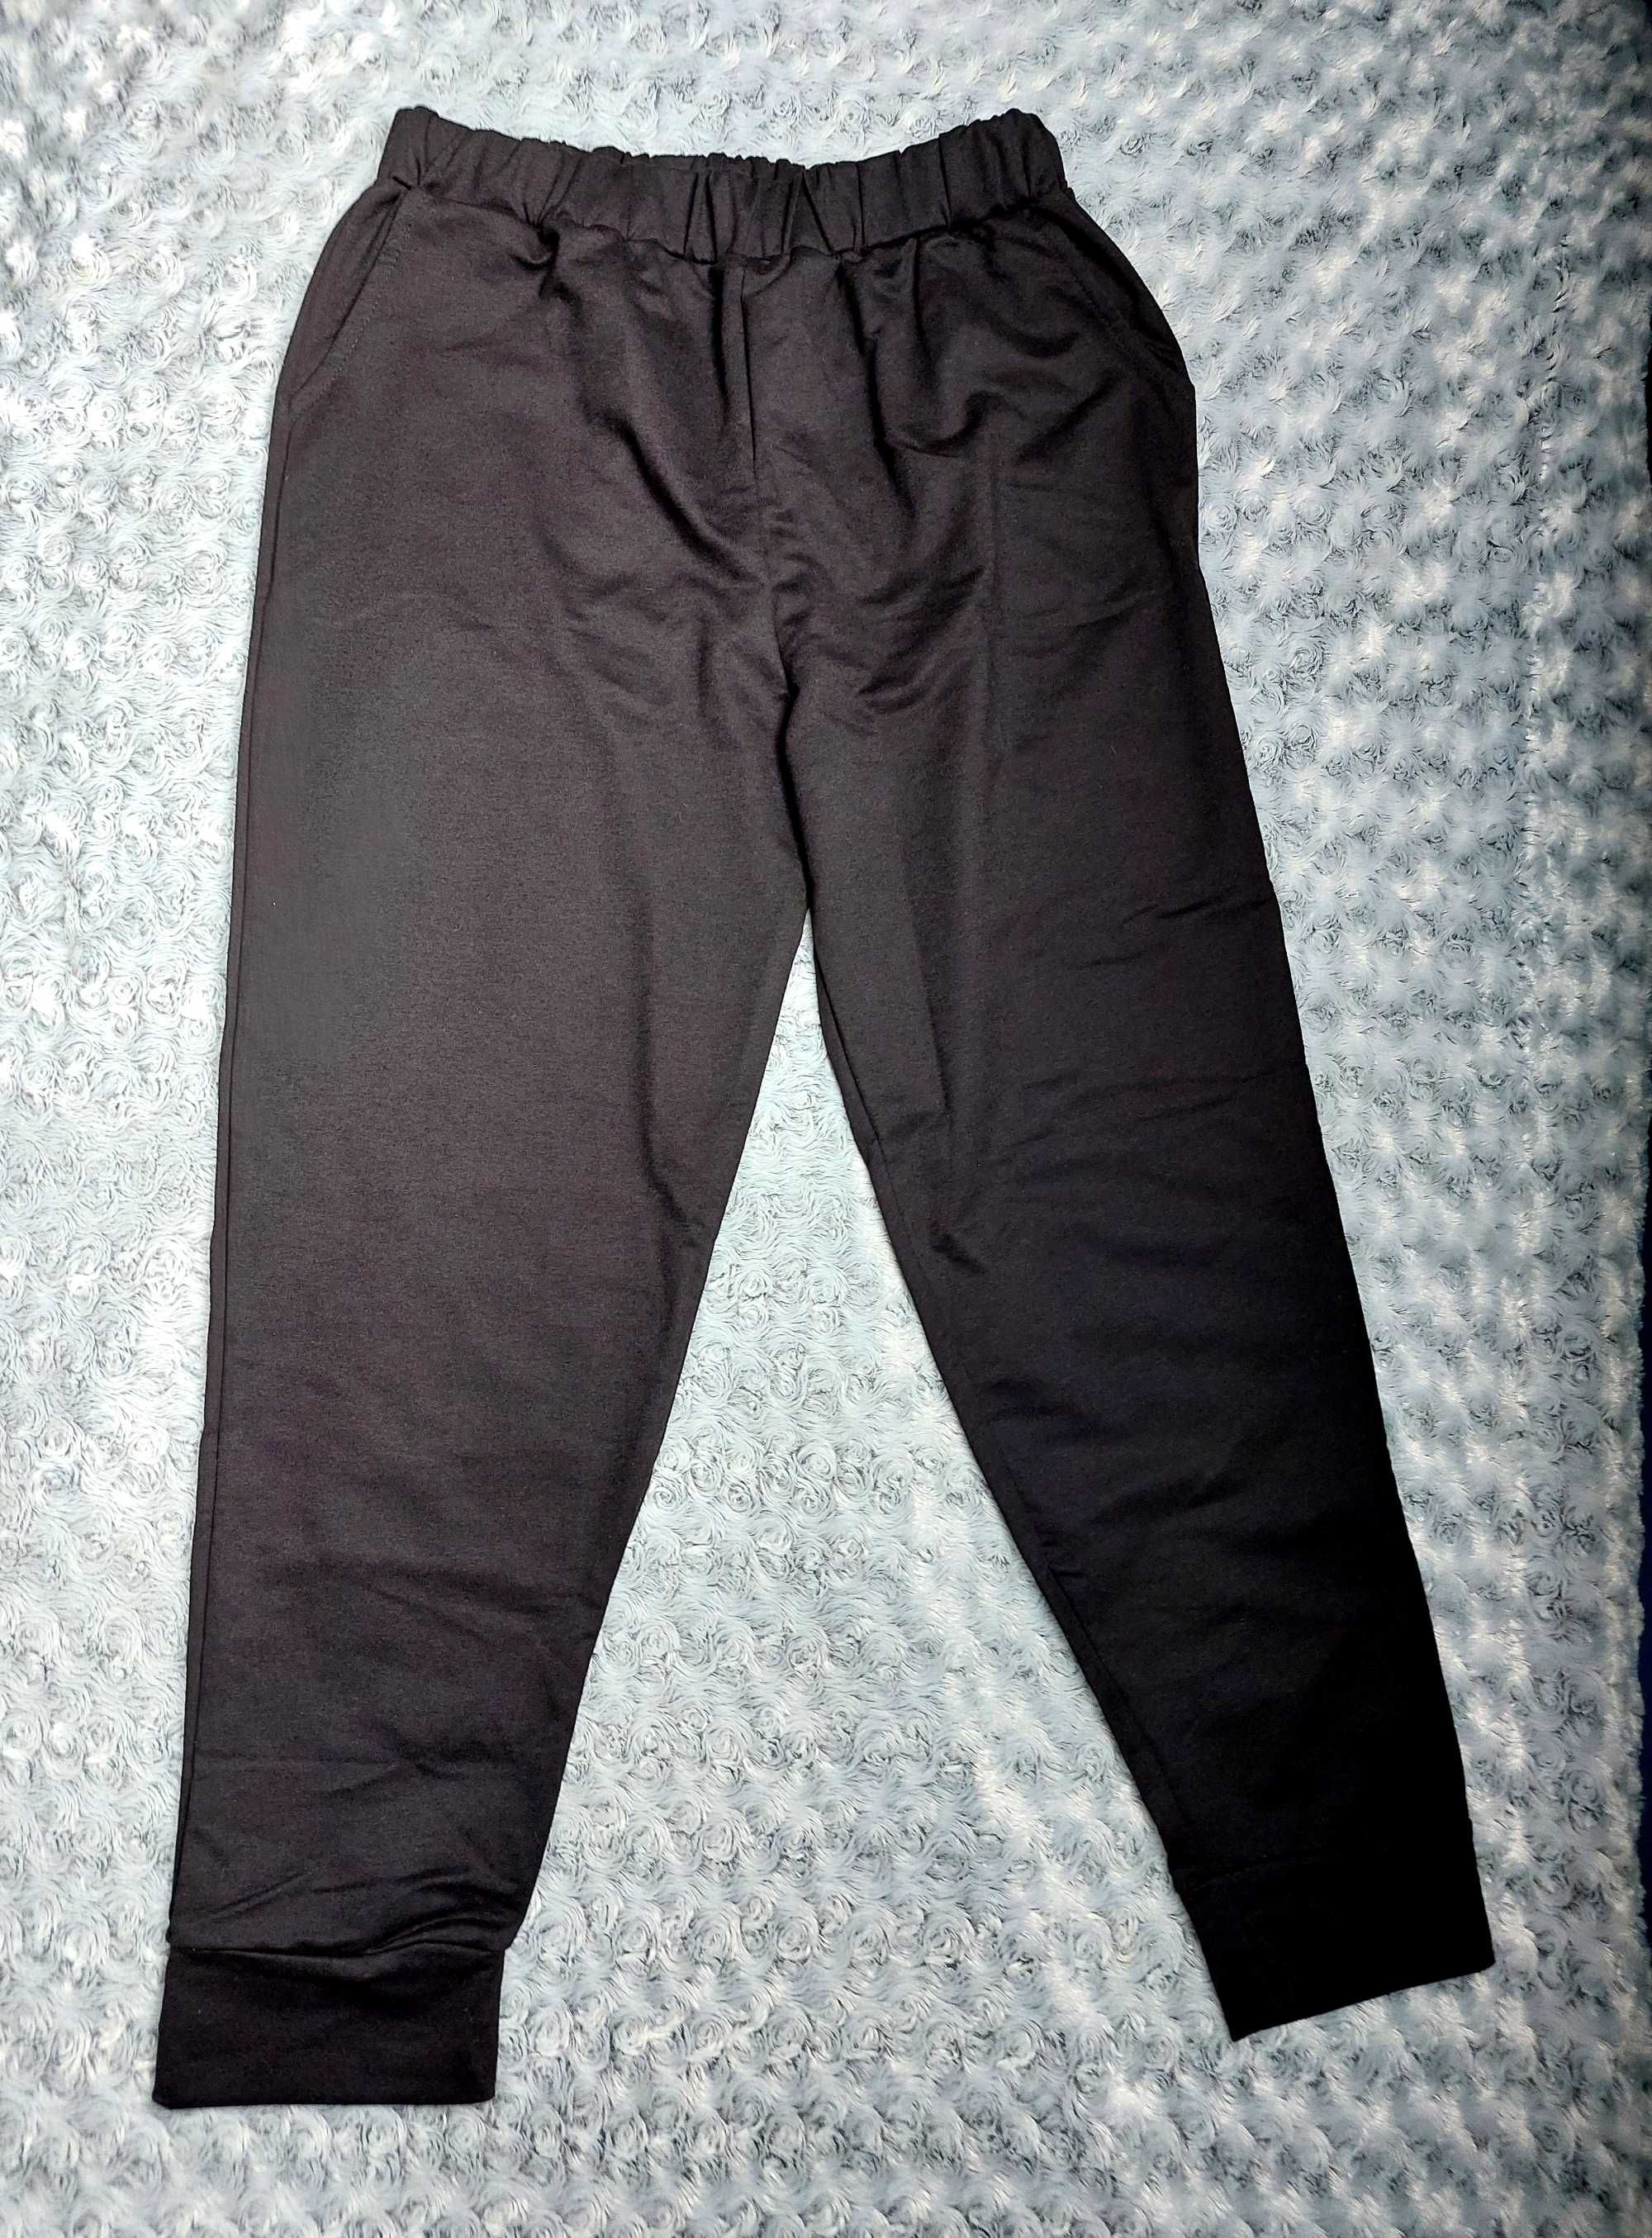 Komplet dresowy: czarne spodnie + bluza z paskami, L